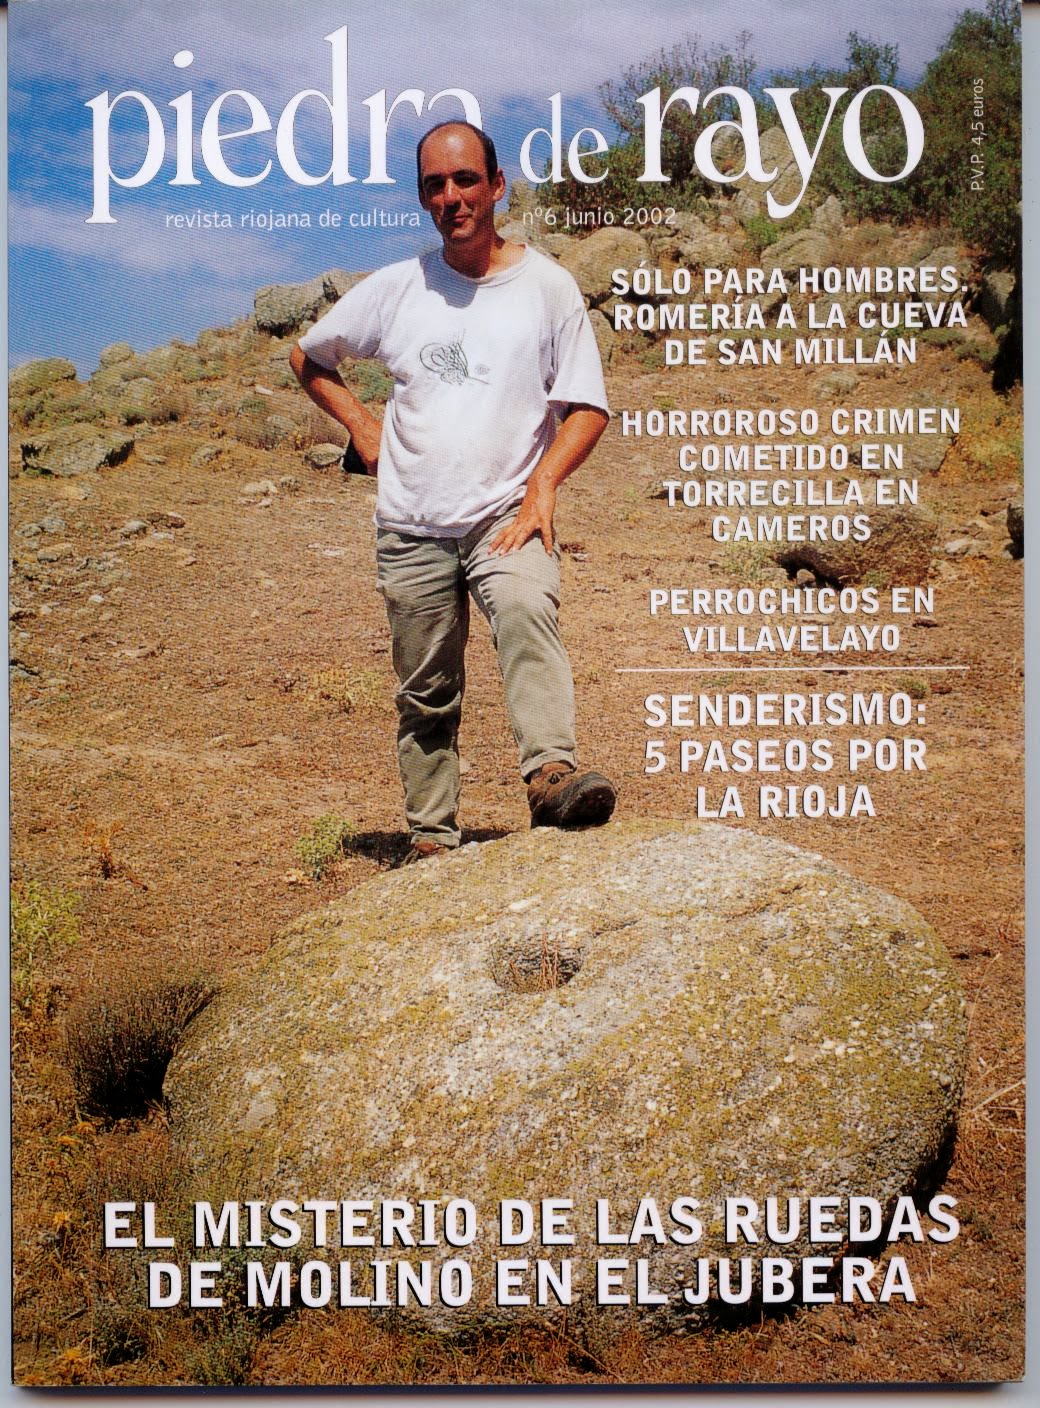 "Piedra de Rayo. Revista Riojana de Cultura Popular".